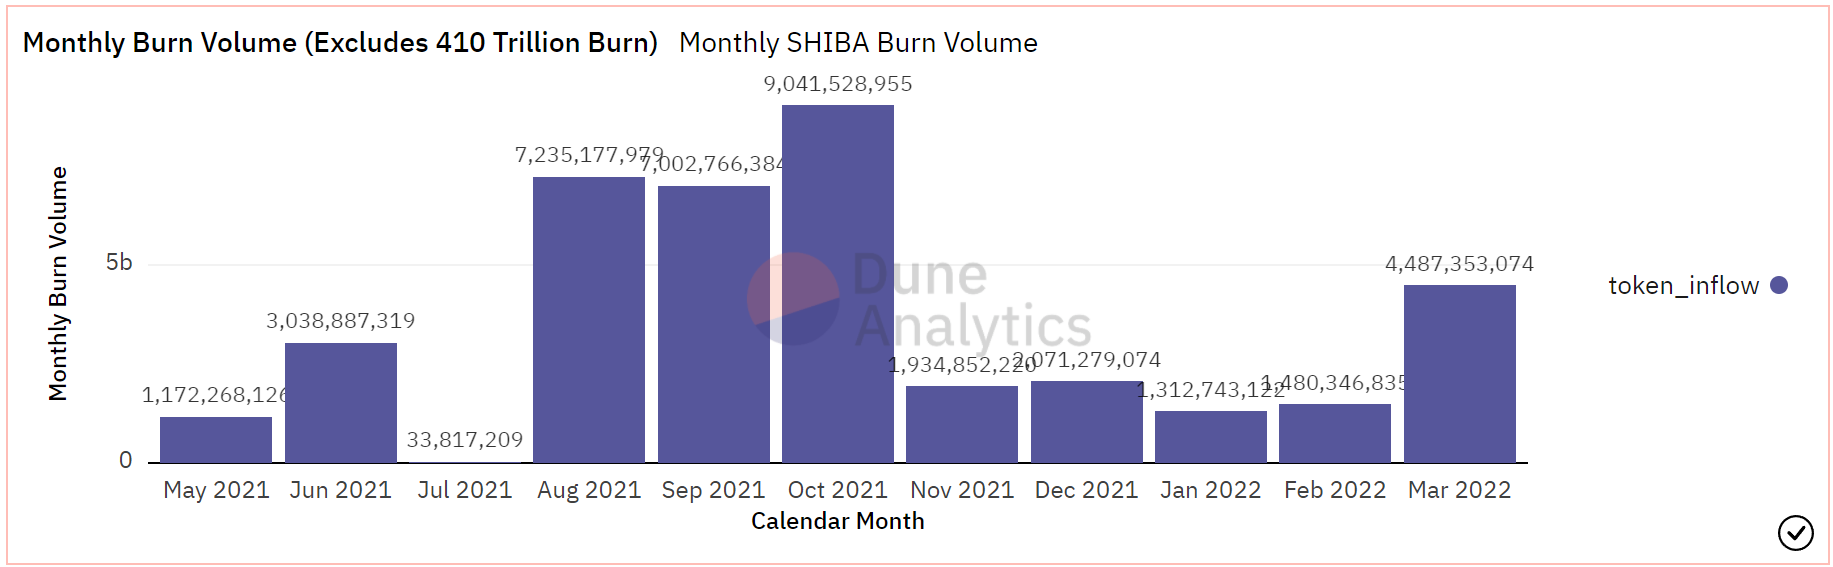 ¿Puede la estrategia de quemar de Shiba Inu revitalizar a SHIB para desencadenar una recuperación?